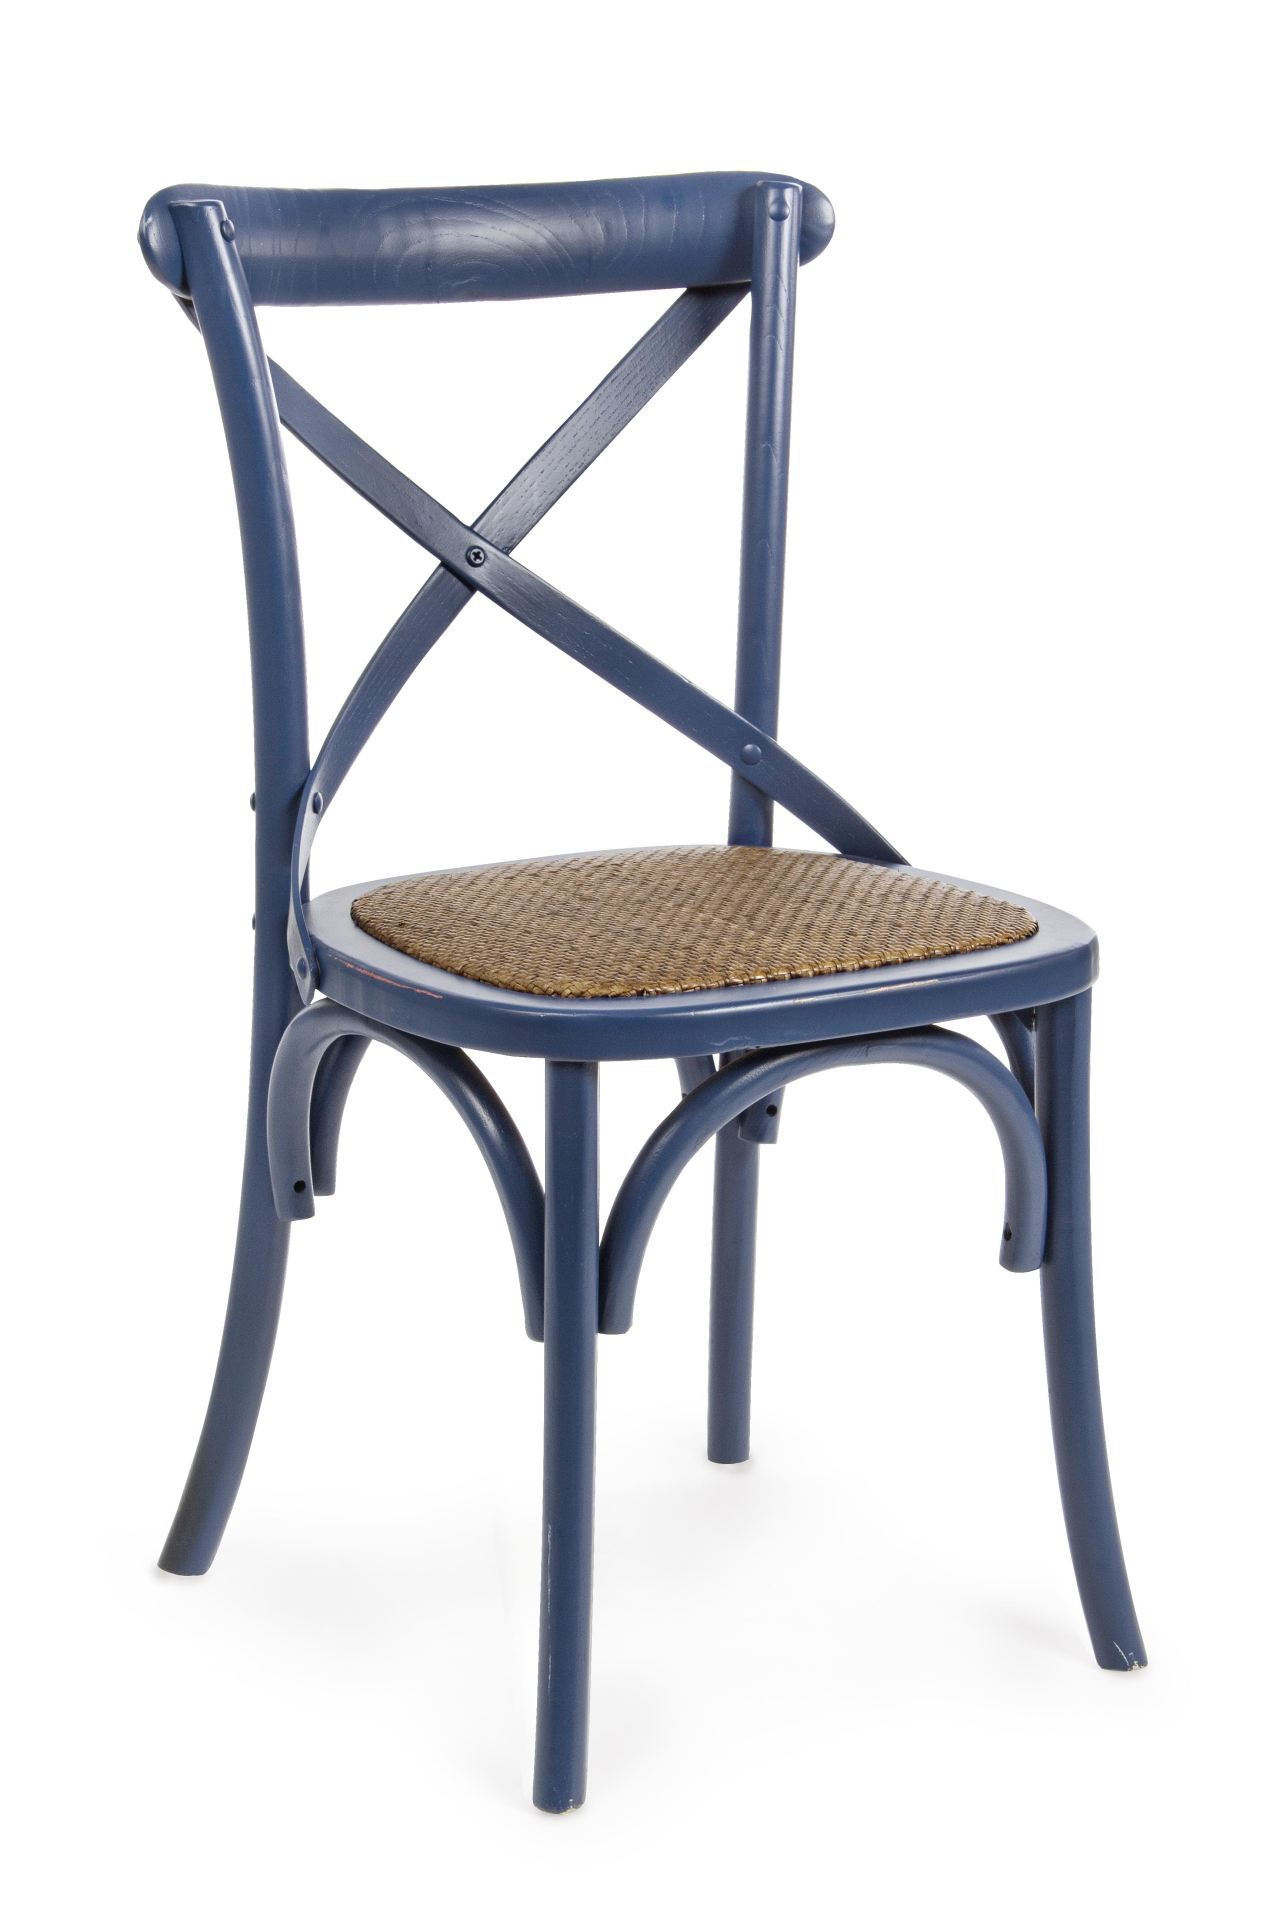 Der Stuhl Cross überzeugt mit seinem klassischen Design. Gefertigt wurde der Stuhl aus Ulmenholz, welches einen blauen Farbton besitzt. Die Sitz- und Rückenfläche ist aus Rattan gefertigt. Die Sitzhöhe beträgt 46 cm.